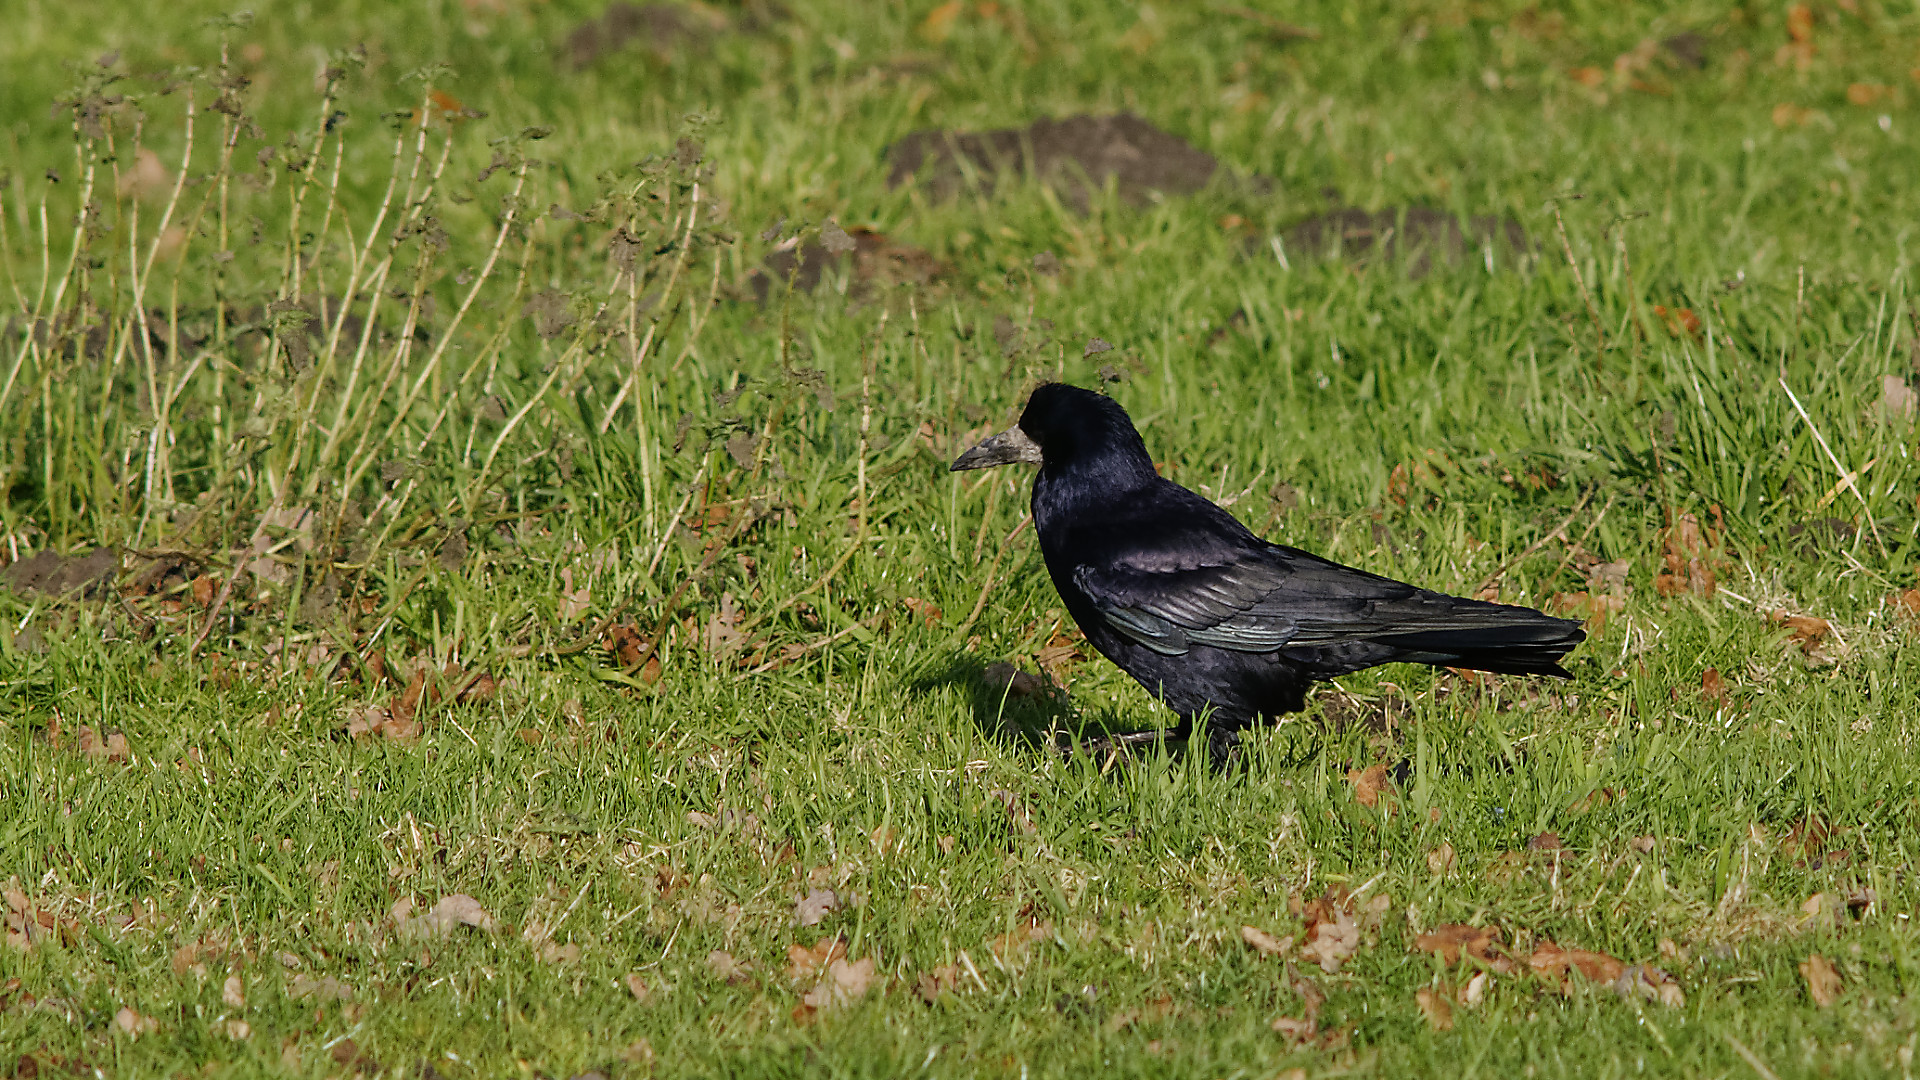 Saatkrähe (Corvus frugilegus) lässt ihr schwarzes Gefieder in der Sonne schimmern